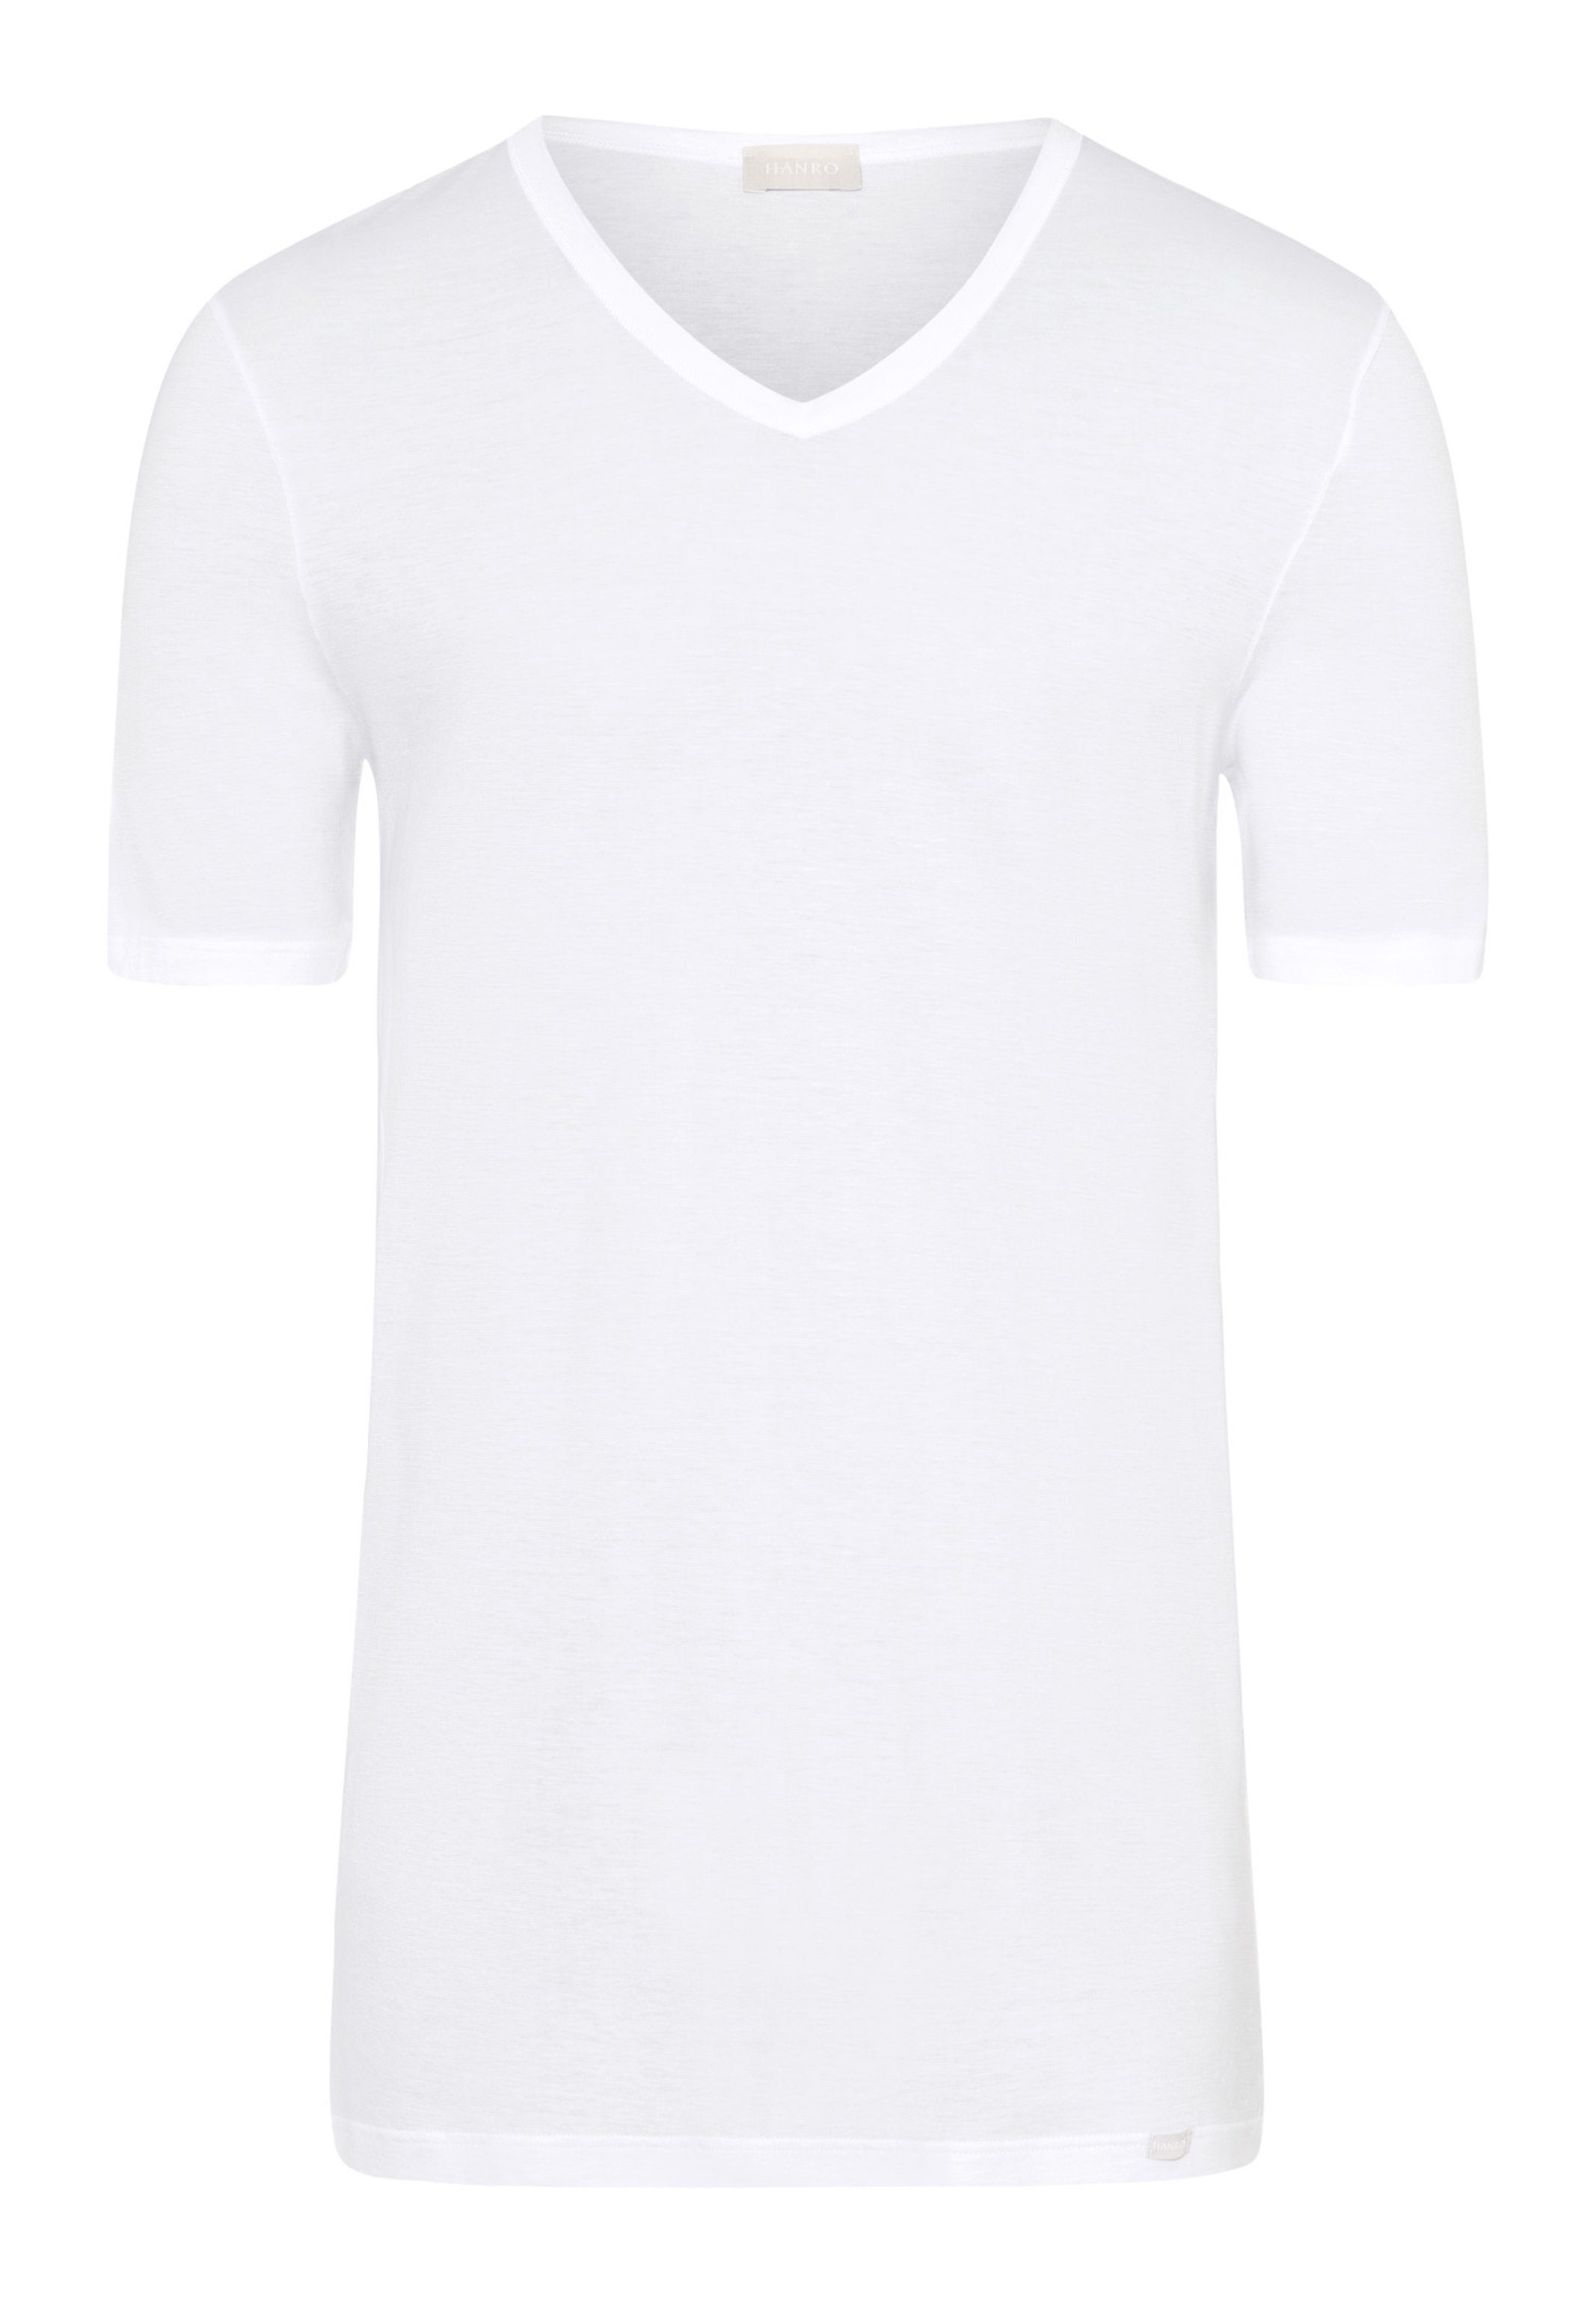 Ultralight (1-St) - Baumwolle Hanro - Unterhemd Shirt Schnelltrocknend / Kurzarm white Unterhemd